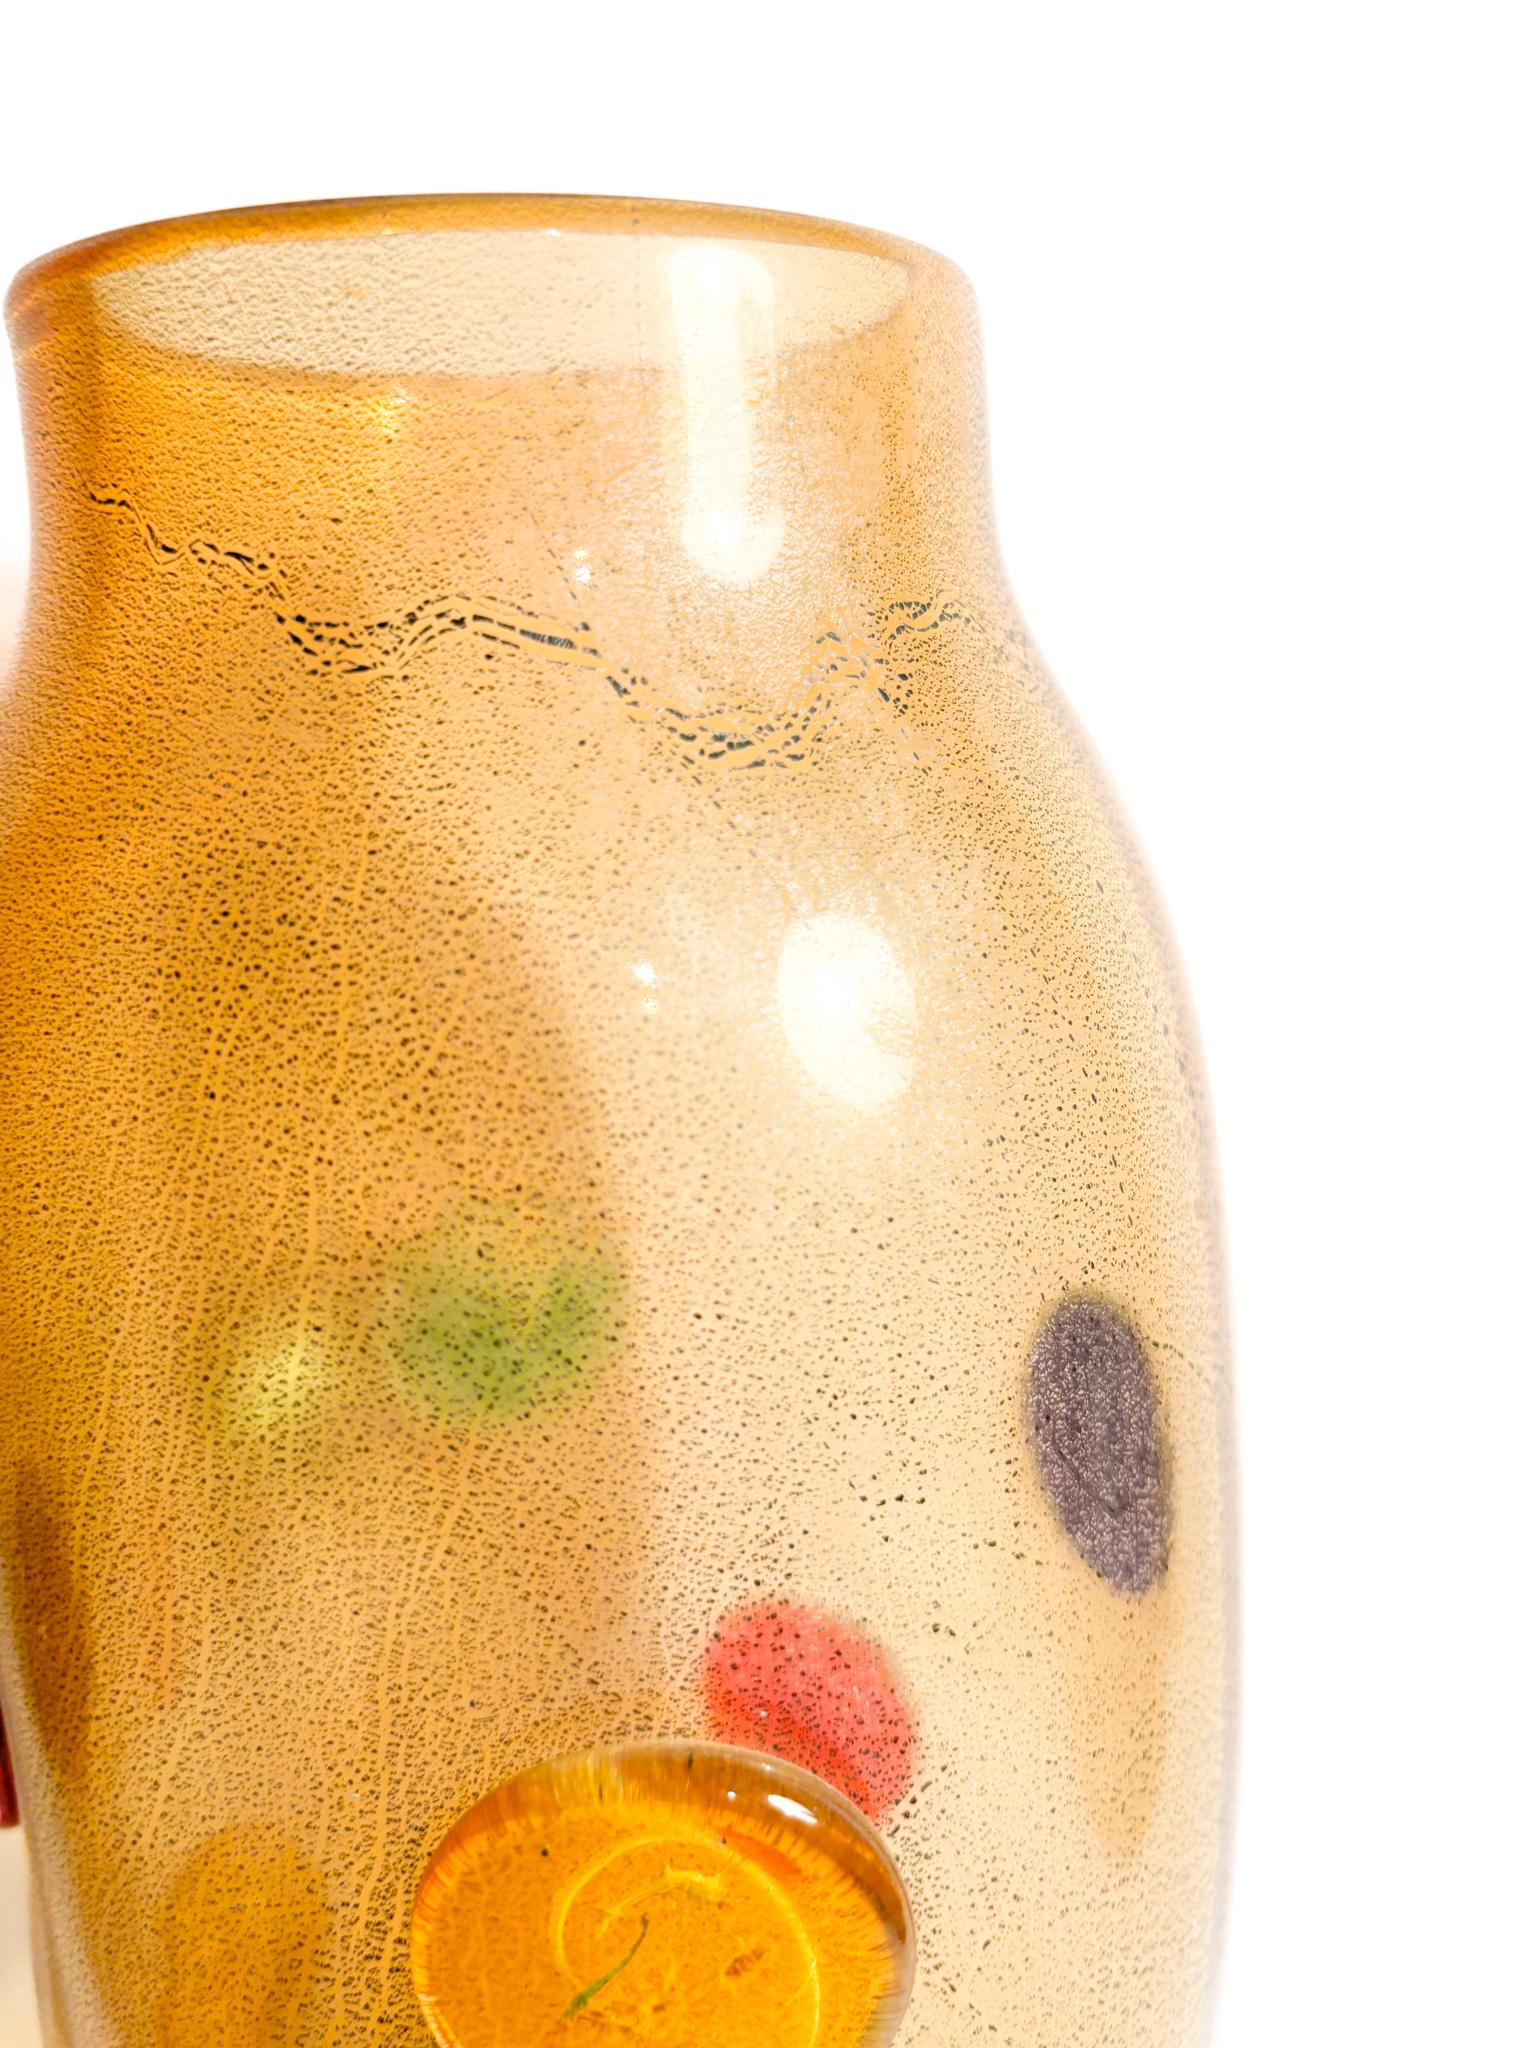 Vase aus mehrfarbigem Murano-Glas mit Blattgold, hergestellt von La murrina in den 1980er Jahren

Ø 12 cm h 33 cm

La murrina ist ein bekanntes Unternehmen aus Murano, das sich auf die Herstellung von exquisiten Glasprodukten spezialisiert hat. La